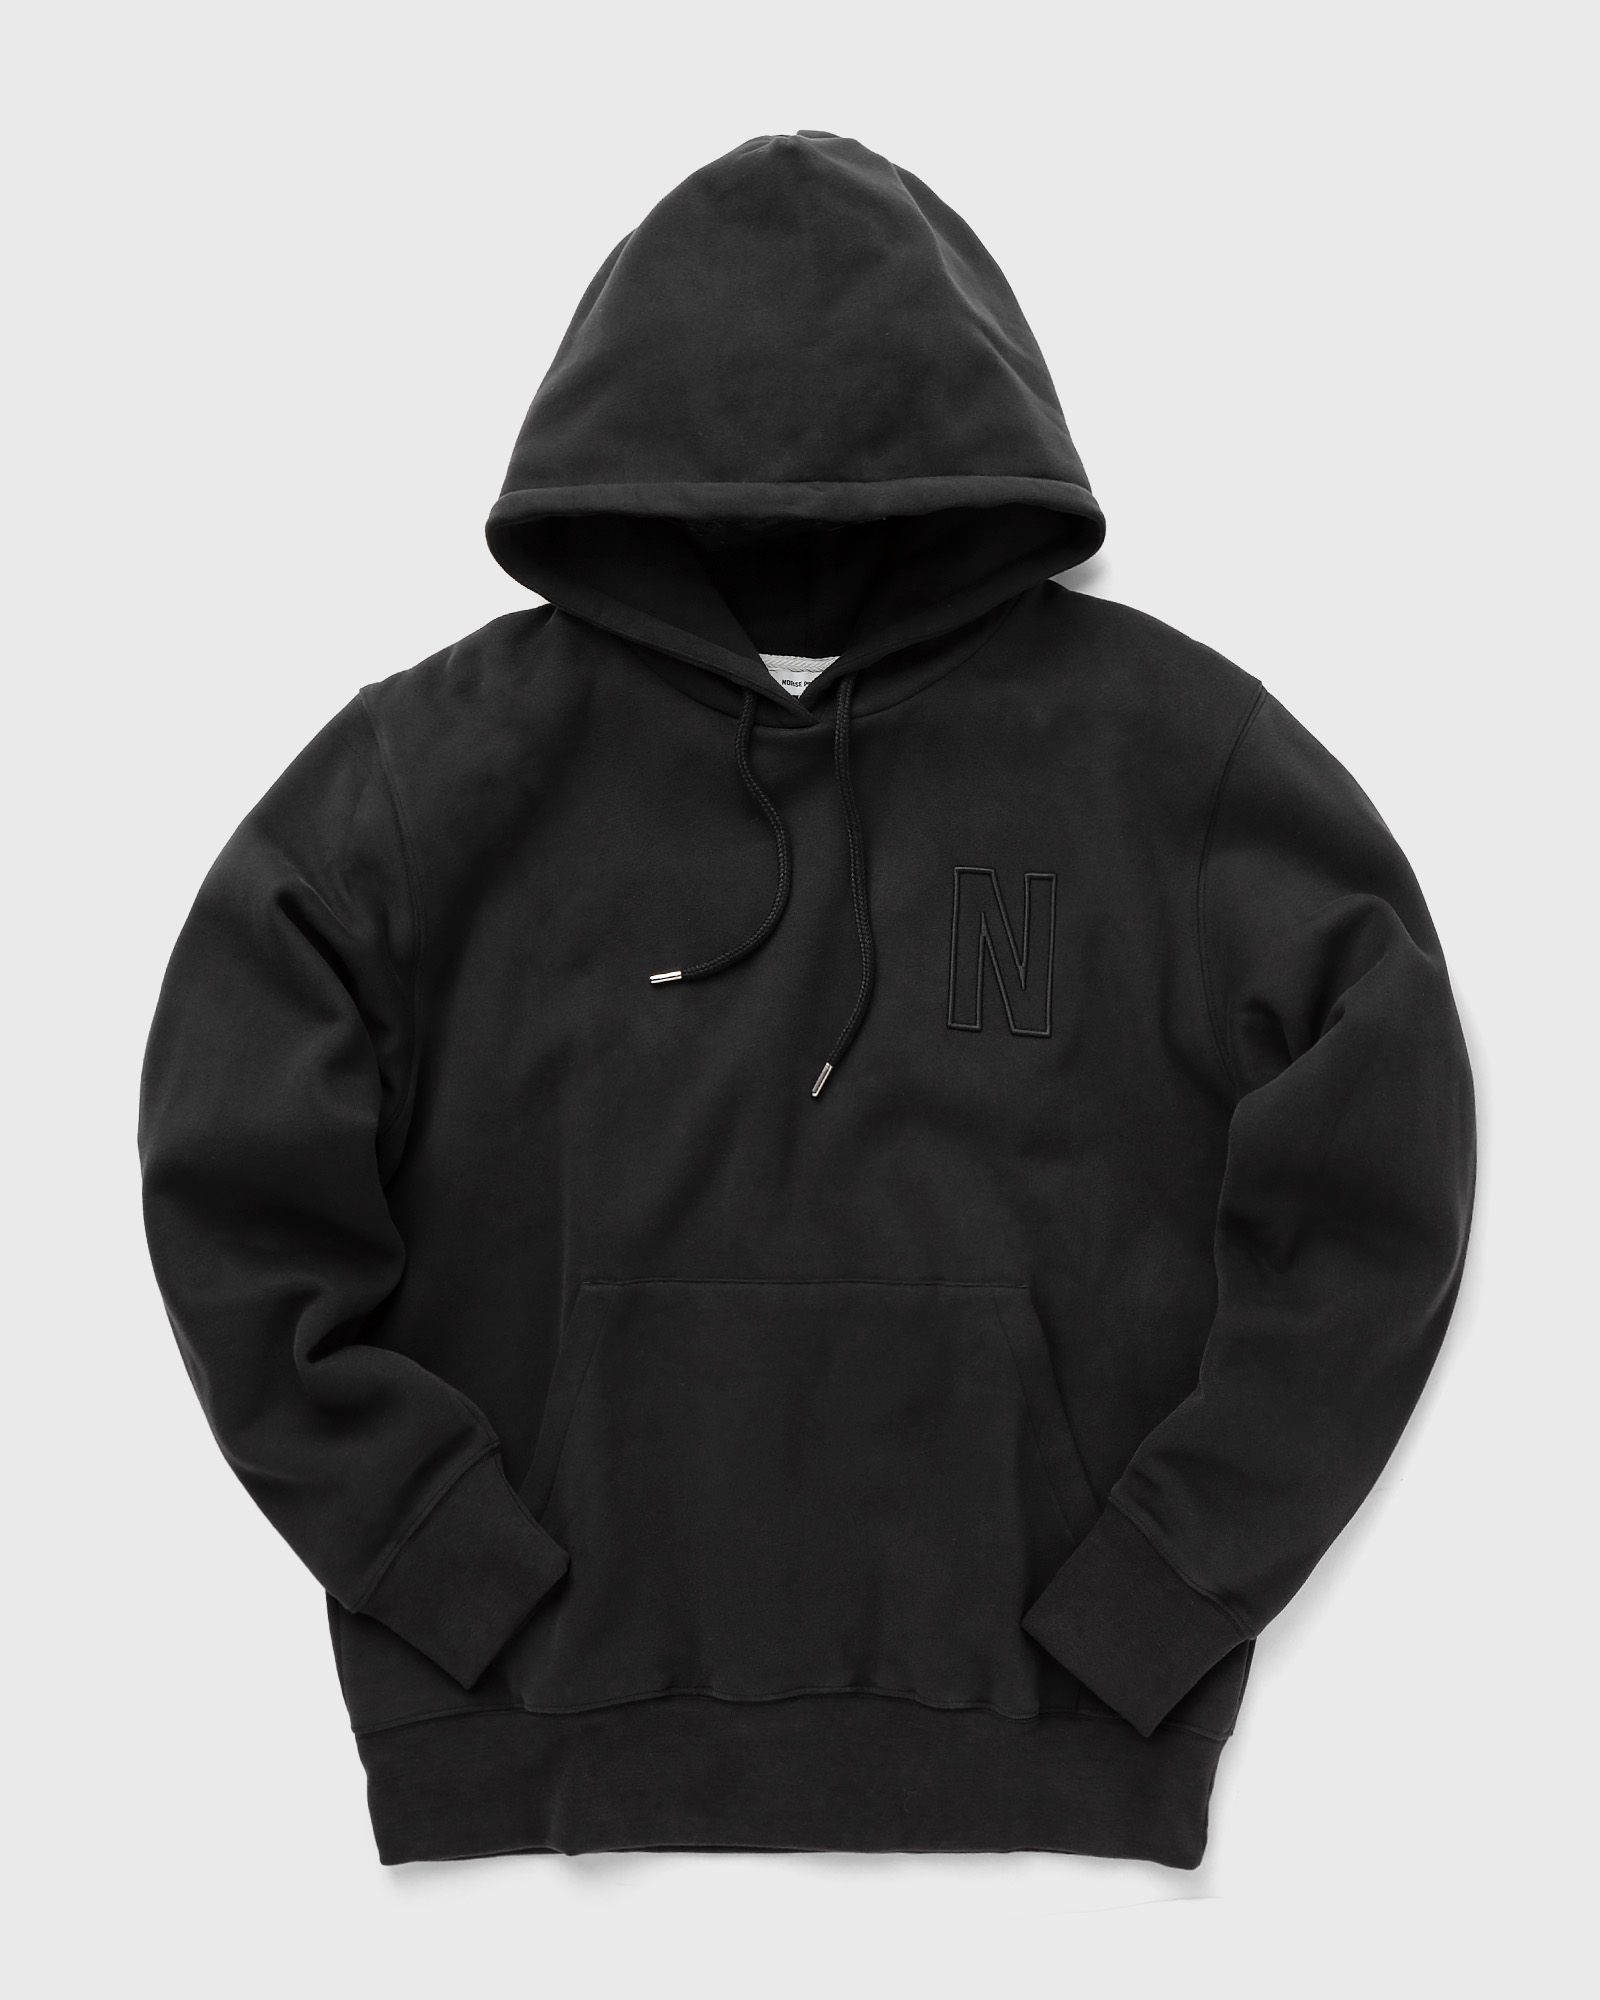 Norse Projects - arne relaxed organic brushed fleece n logo hoodie men hoodies|zippers black in größe:m